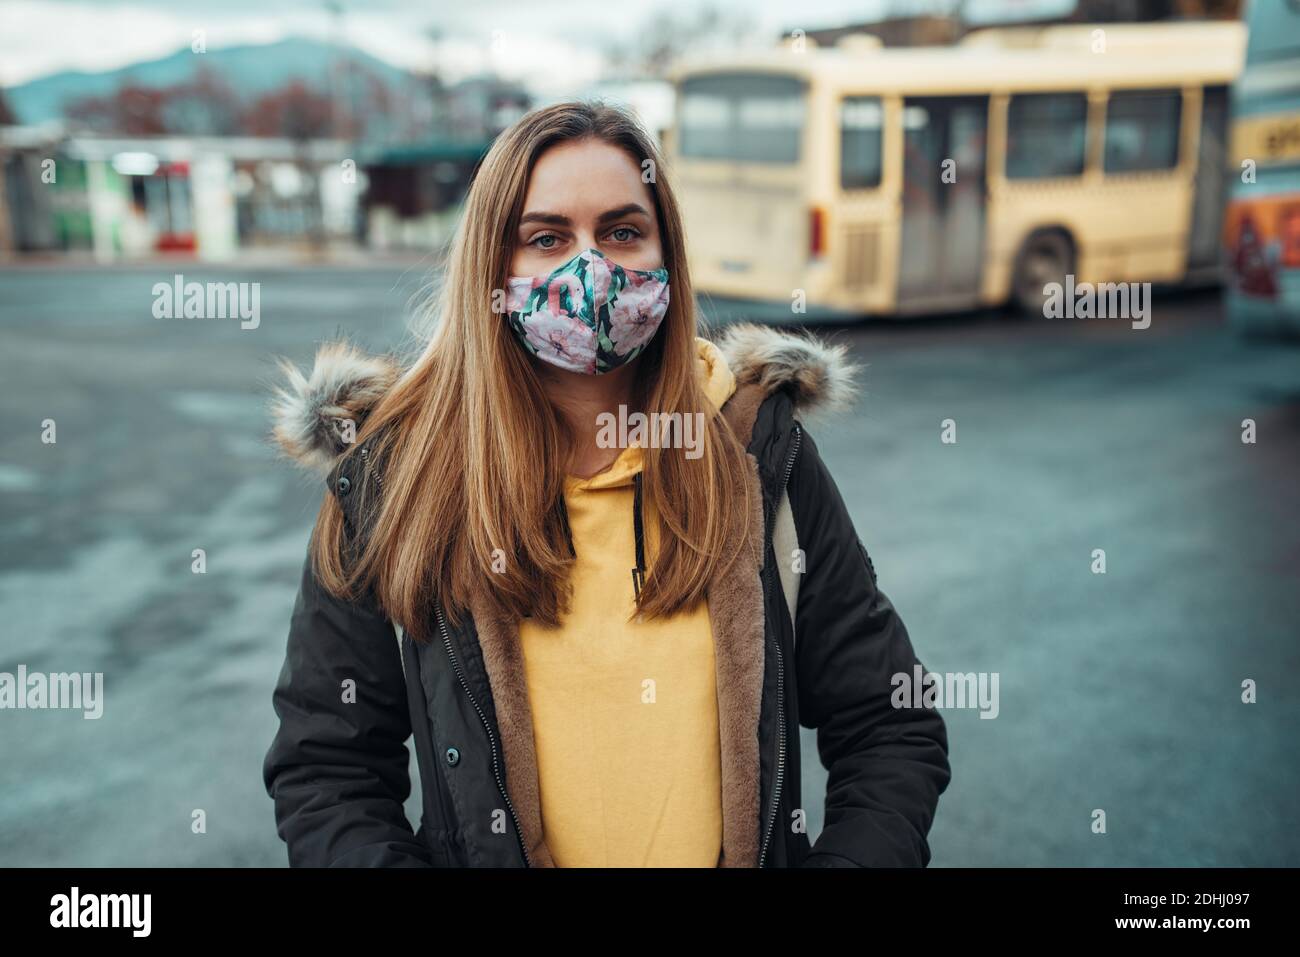 donna con maschera facciale covid-19 mezzi pubblici, fermata dell'autobus Foto Stock